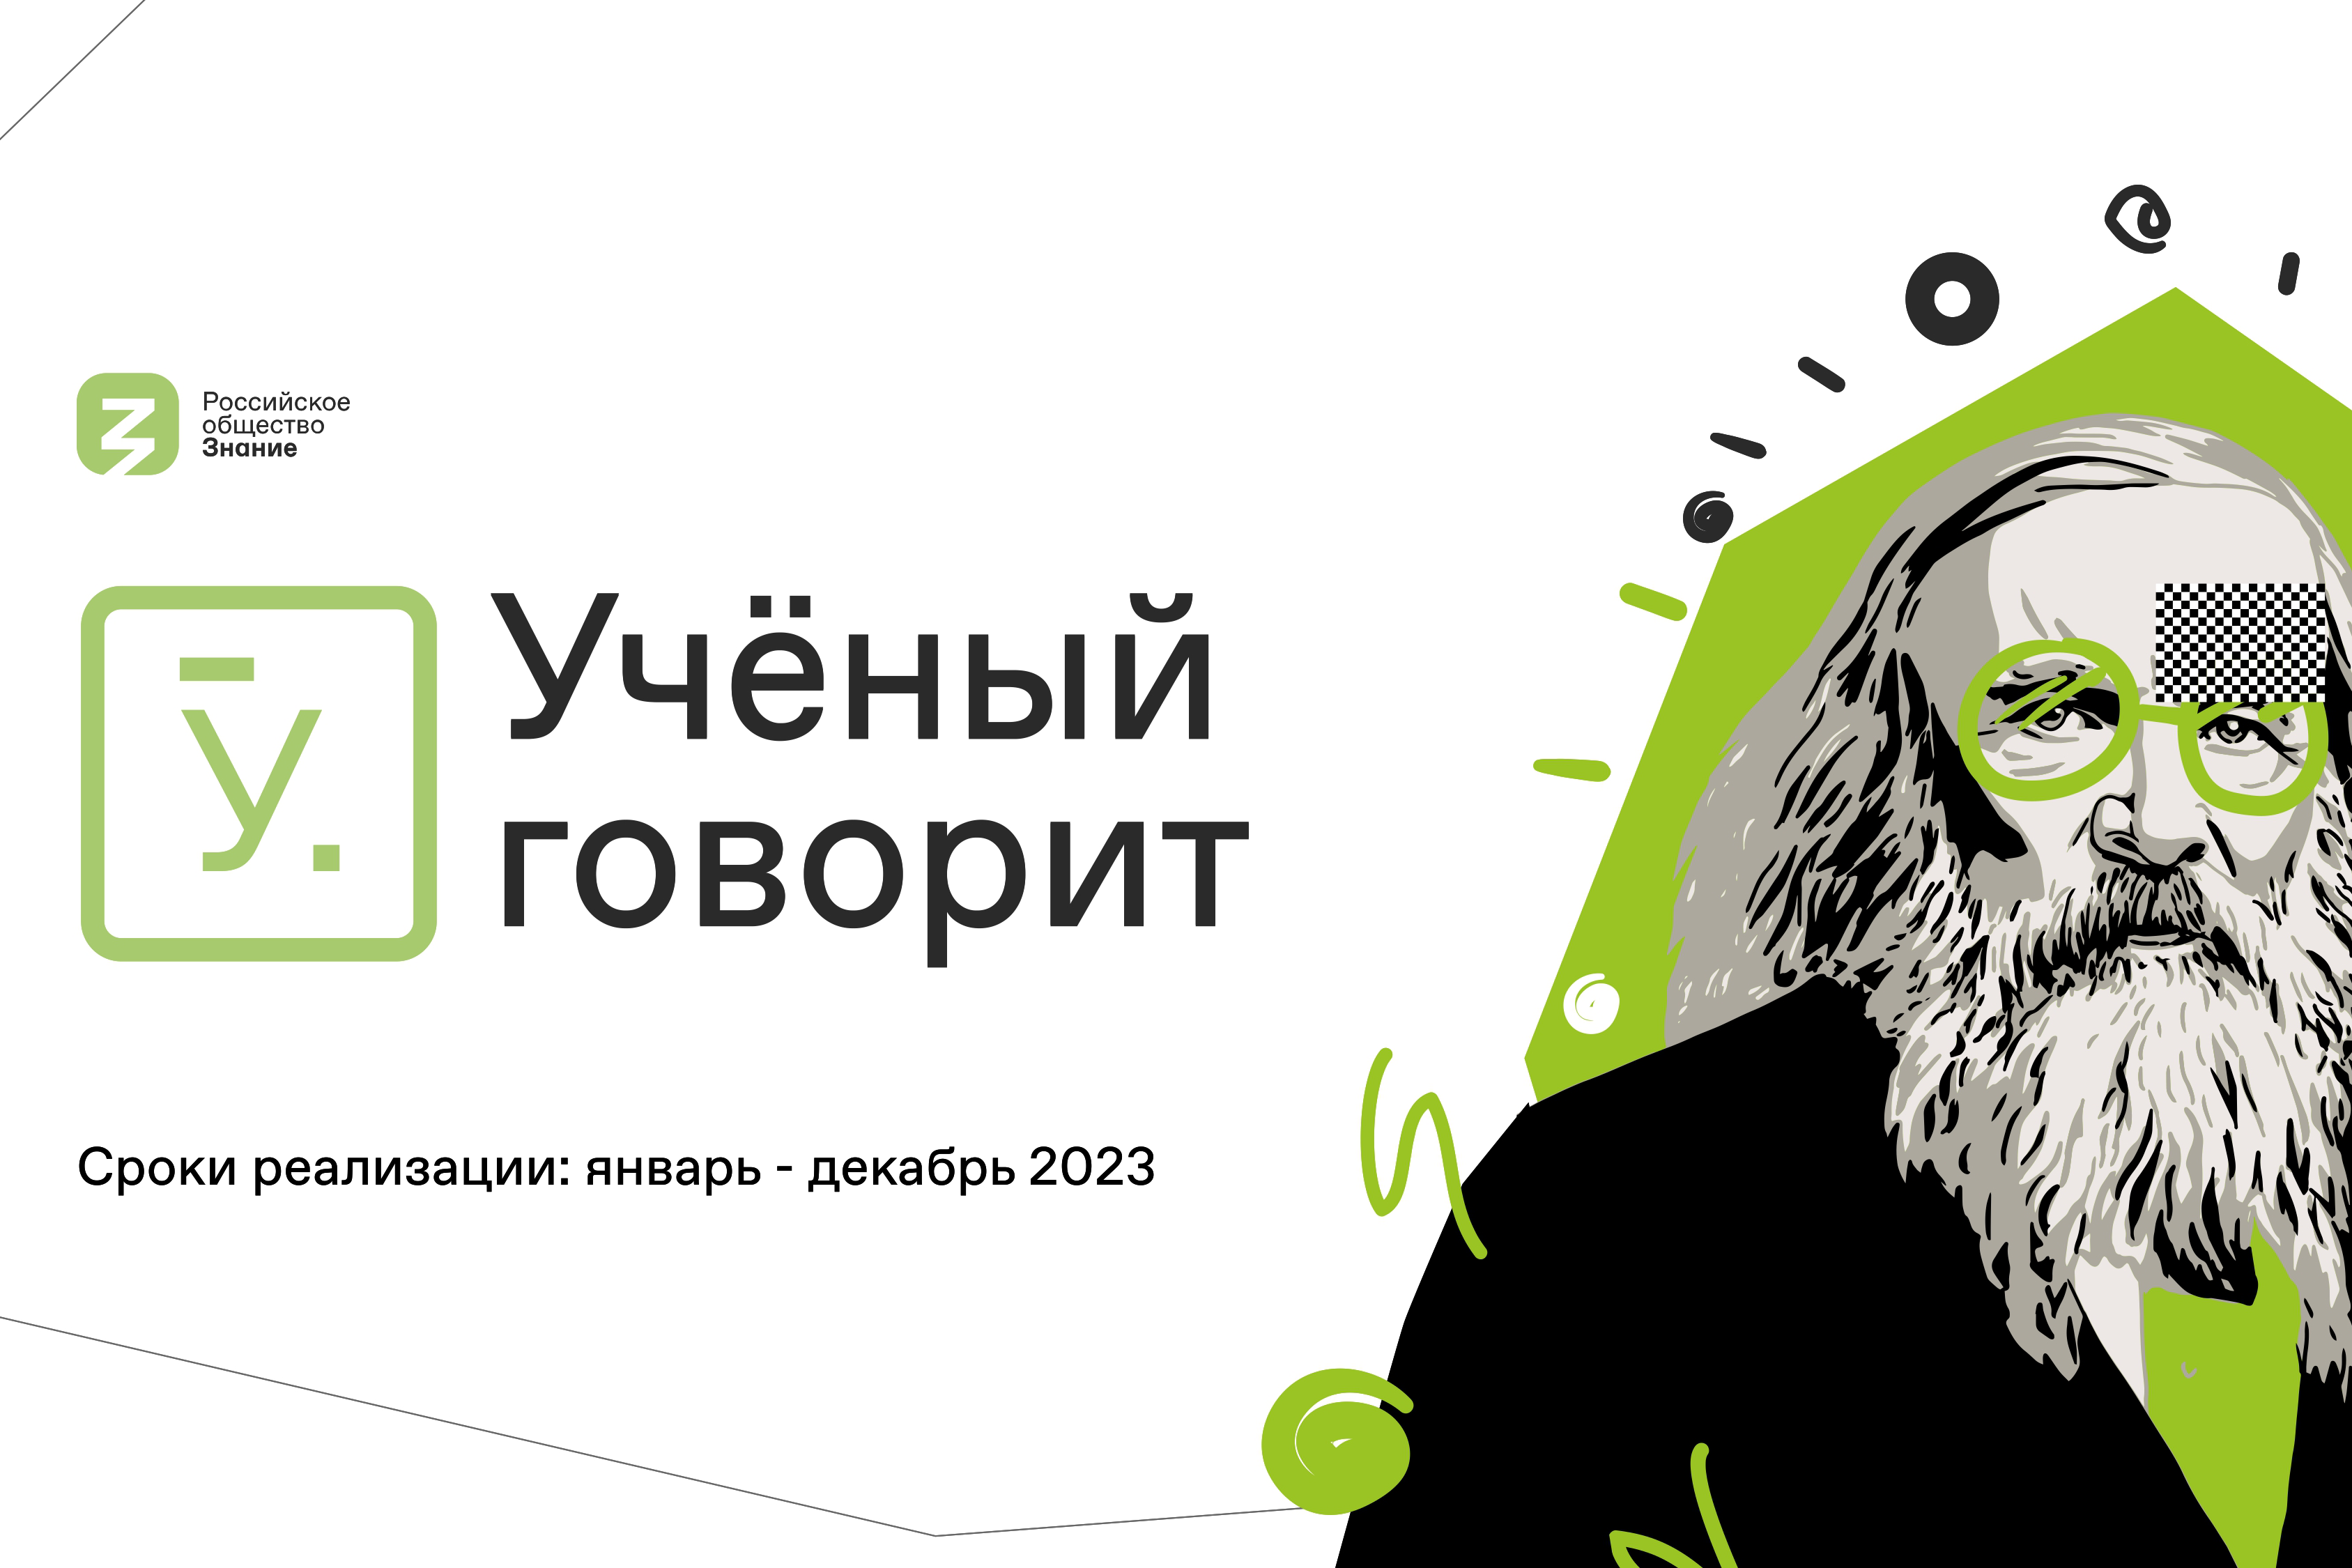 Проект Российского общества «Знание» «Ученый говорит» ищет спикеров